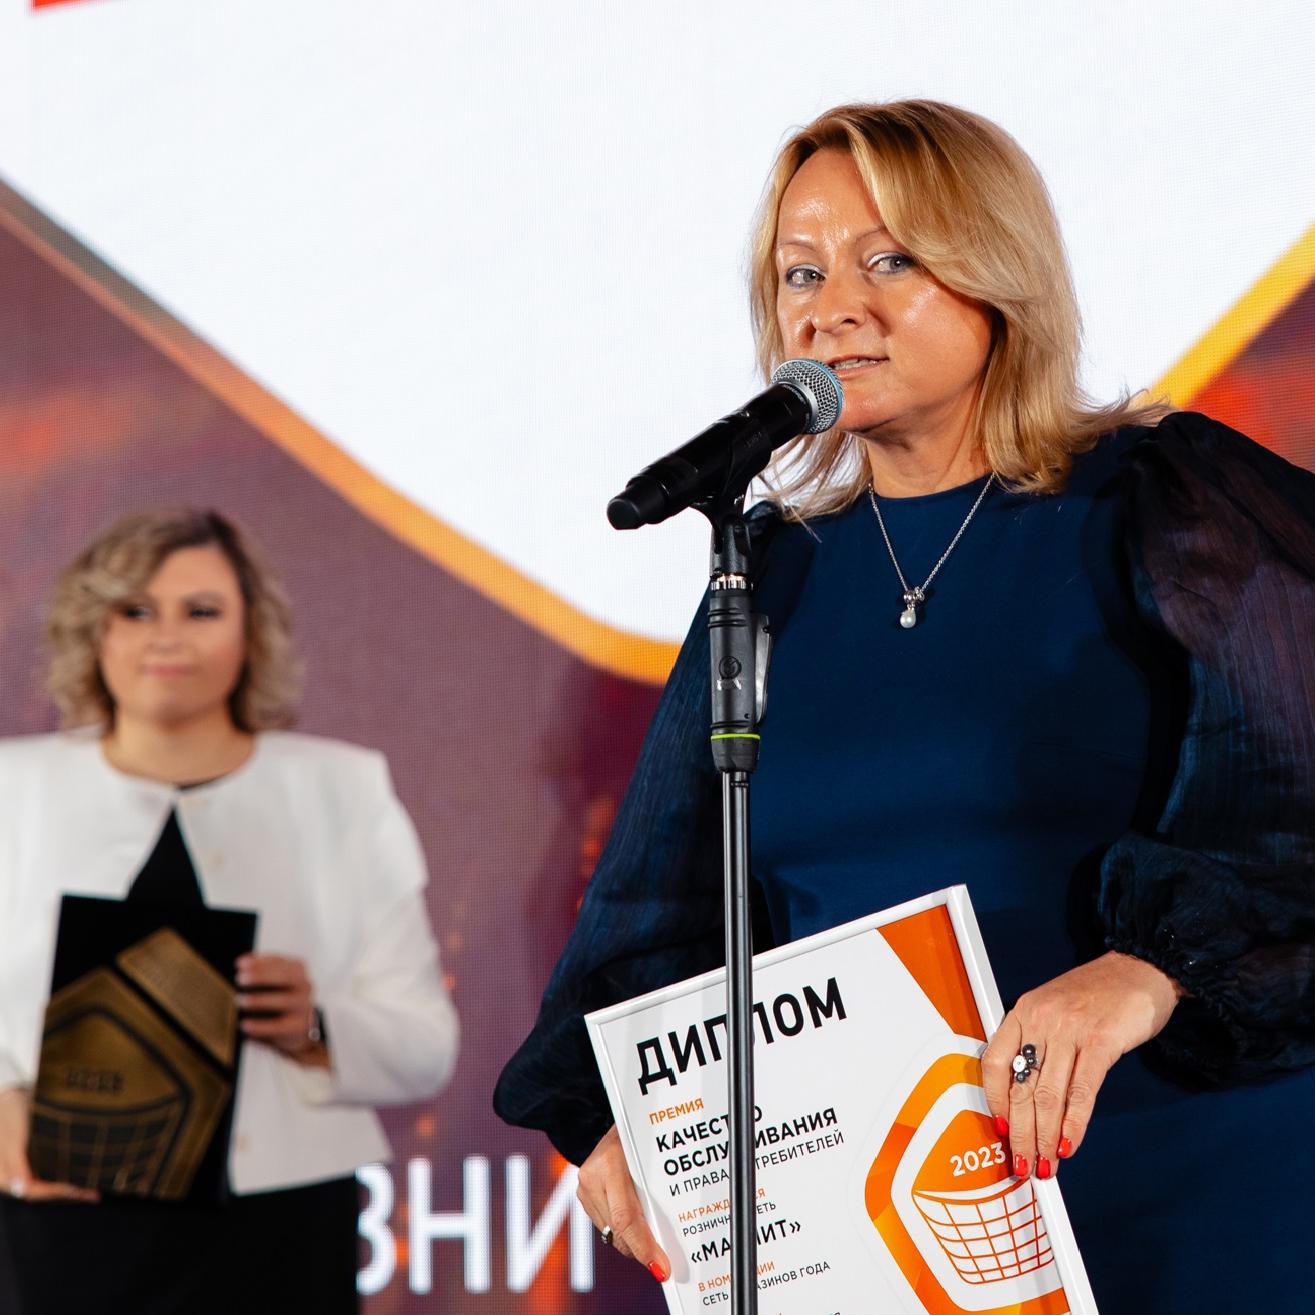 Объявлены лауреаты XIV Премии «Качество обслуживания и права потребителей»